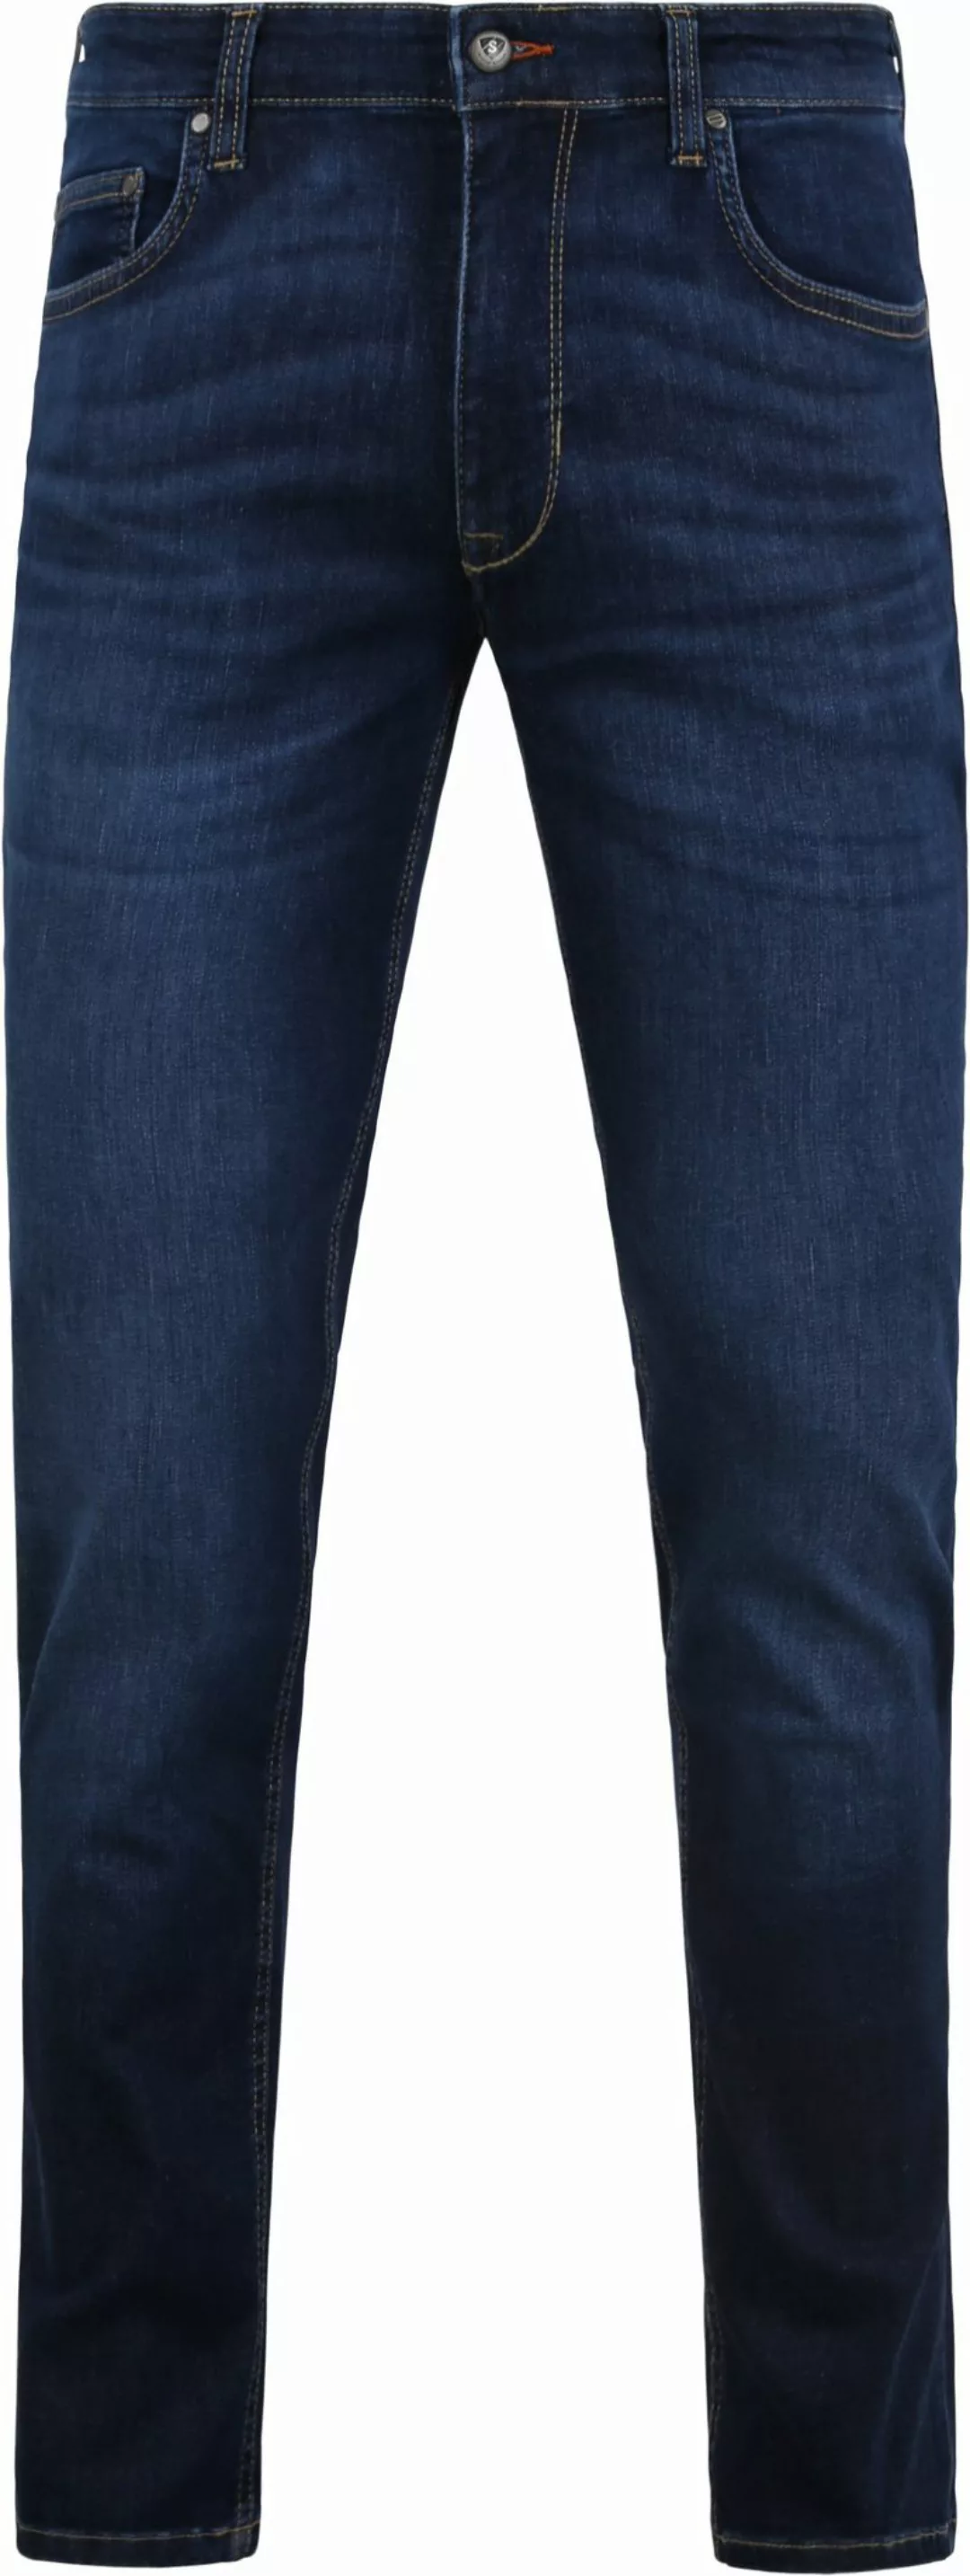 Suitable Jeans Navy - Größe W 32 - L 34 günstig online kaufen